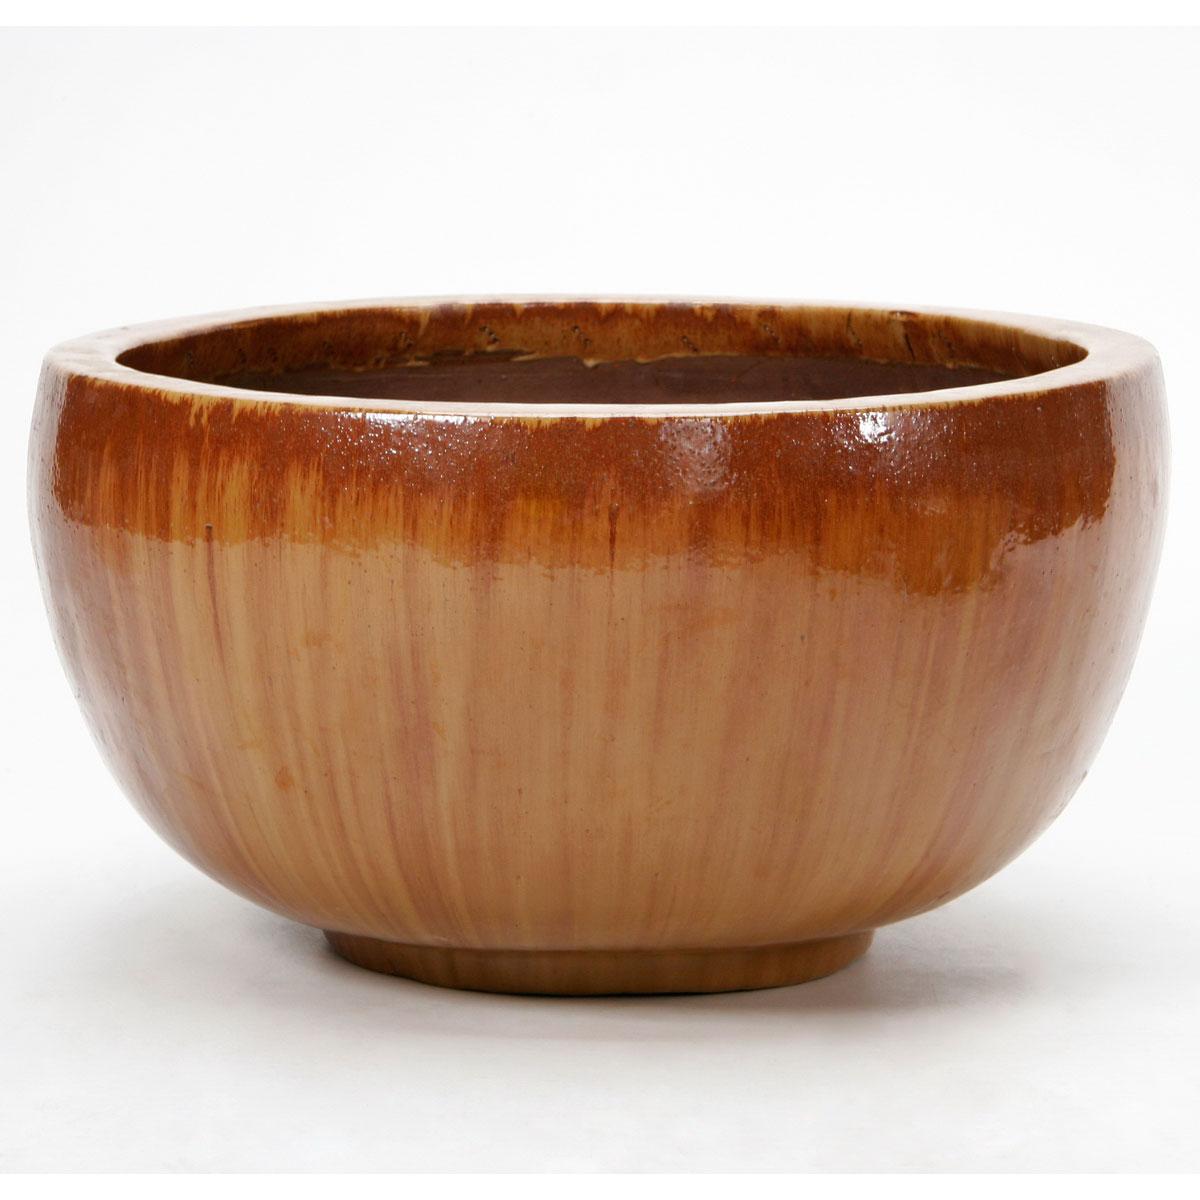 Ceramic Bowl Medium Planter Pot In/Out